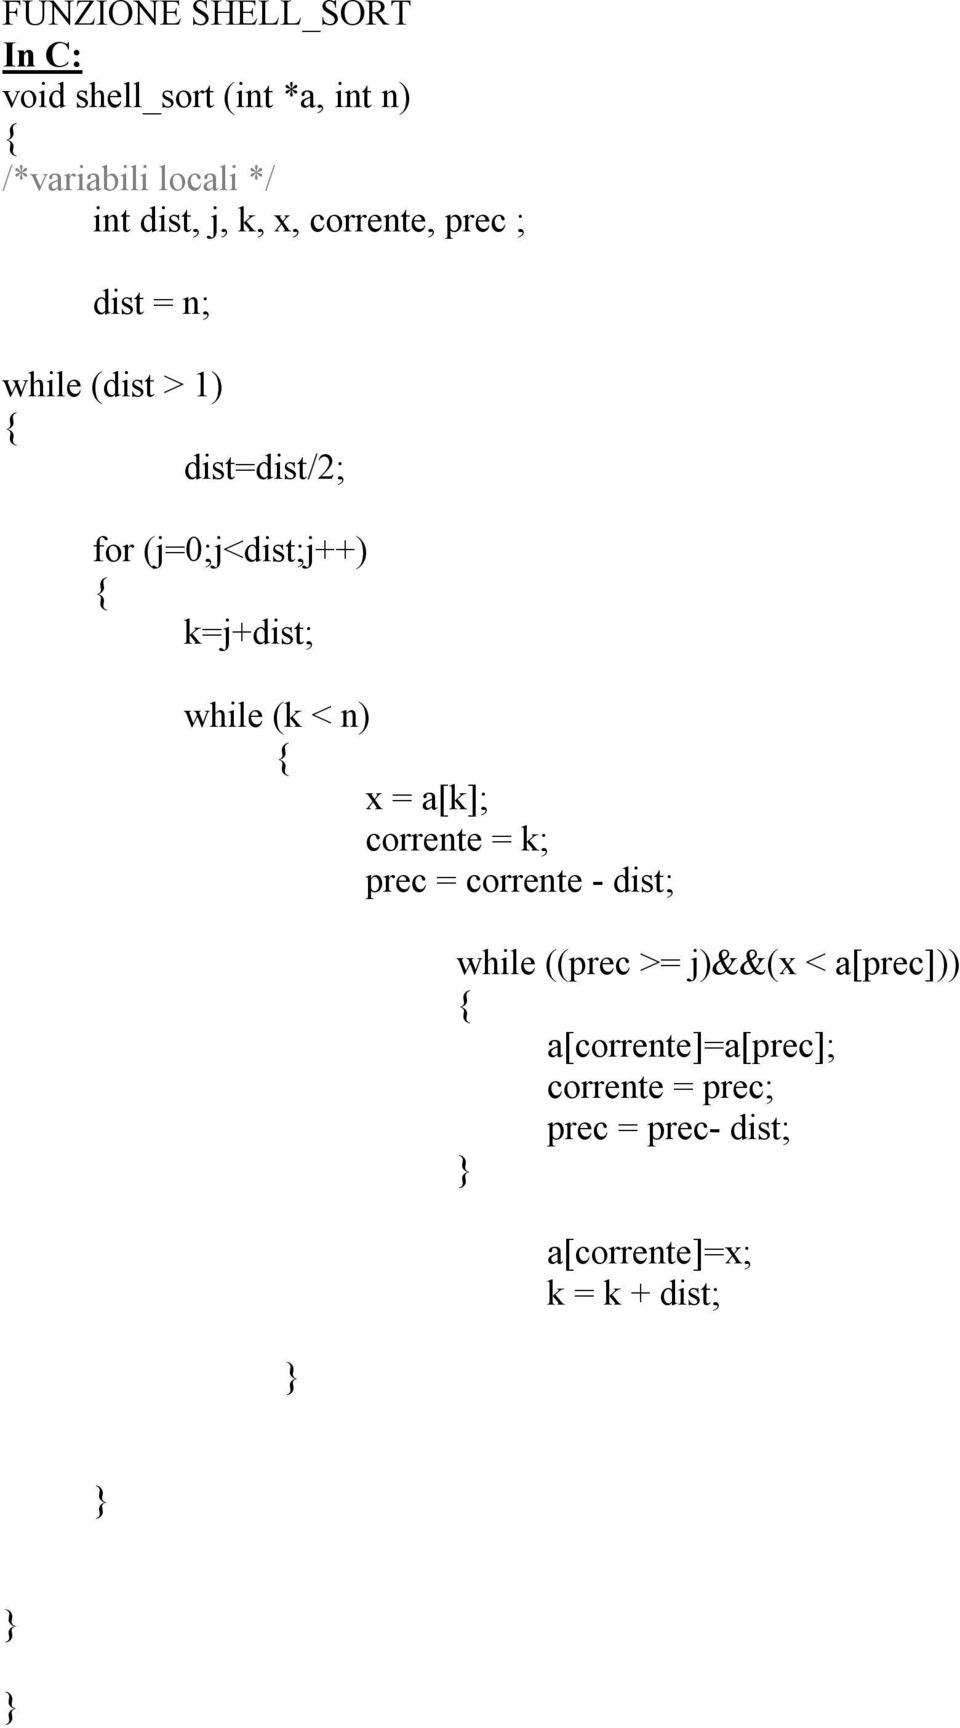 k=j+dist; while (k < n) x = a[k]; corrente = k; prec = corrente - dist; while ((prec >=